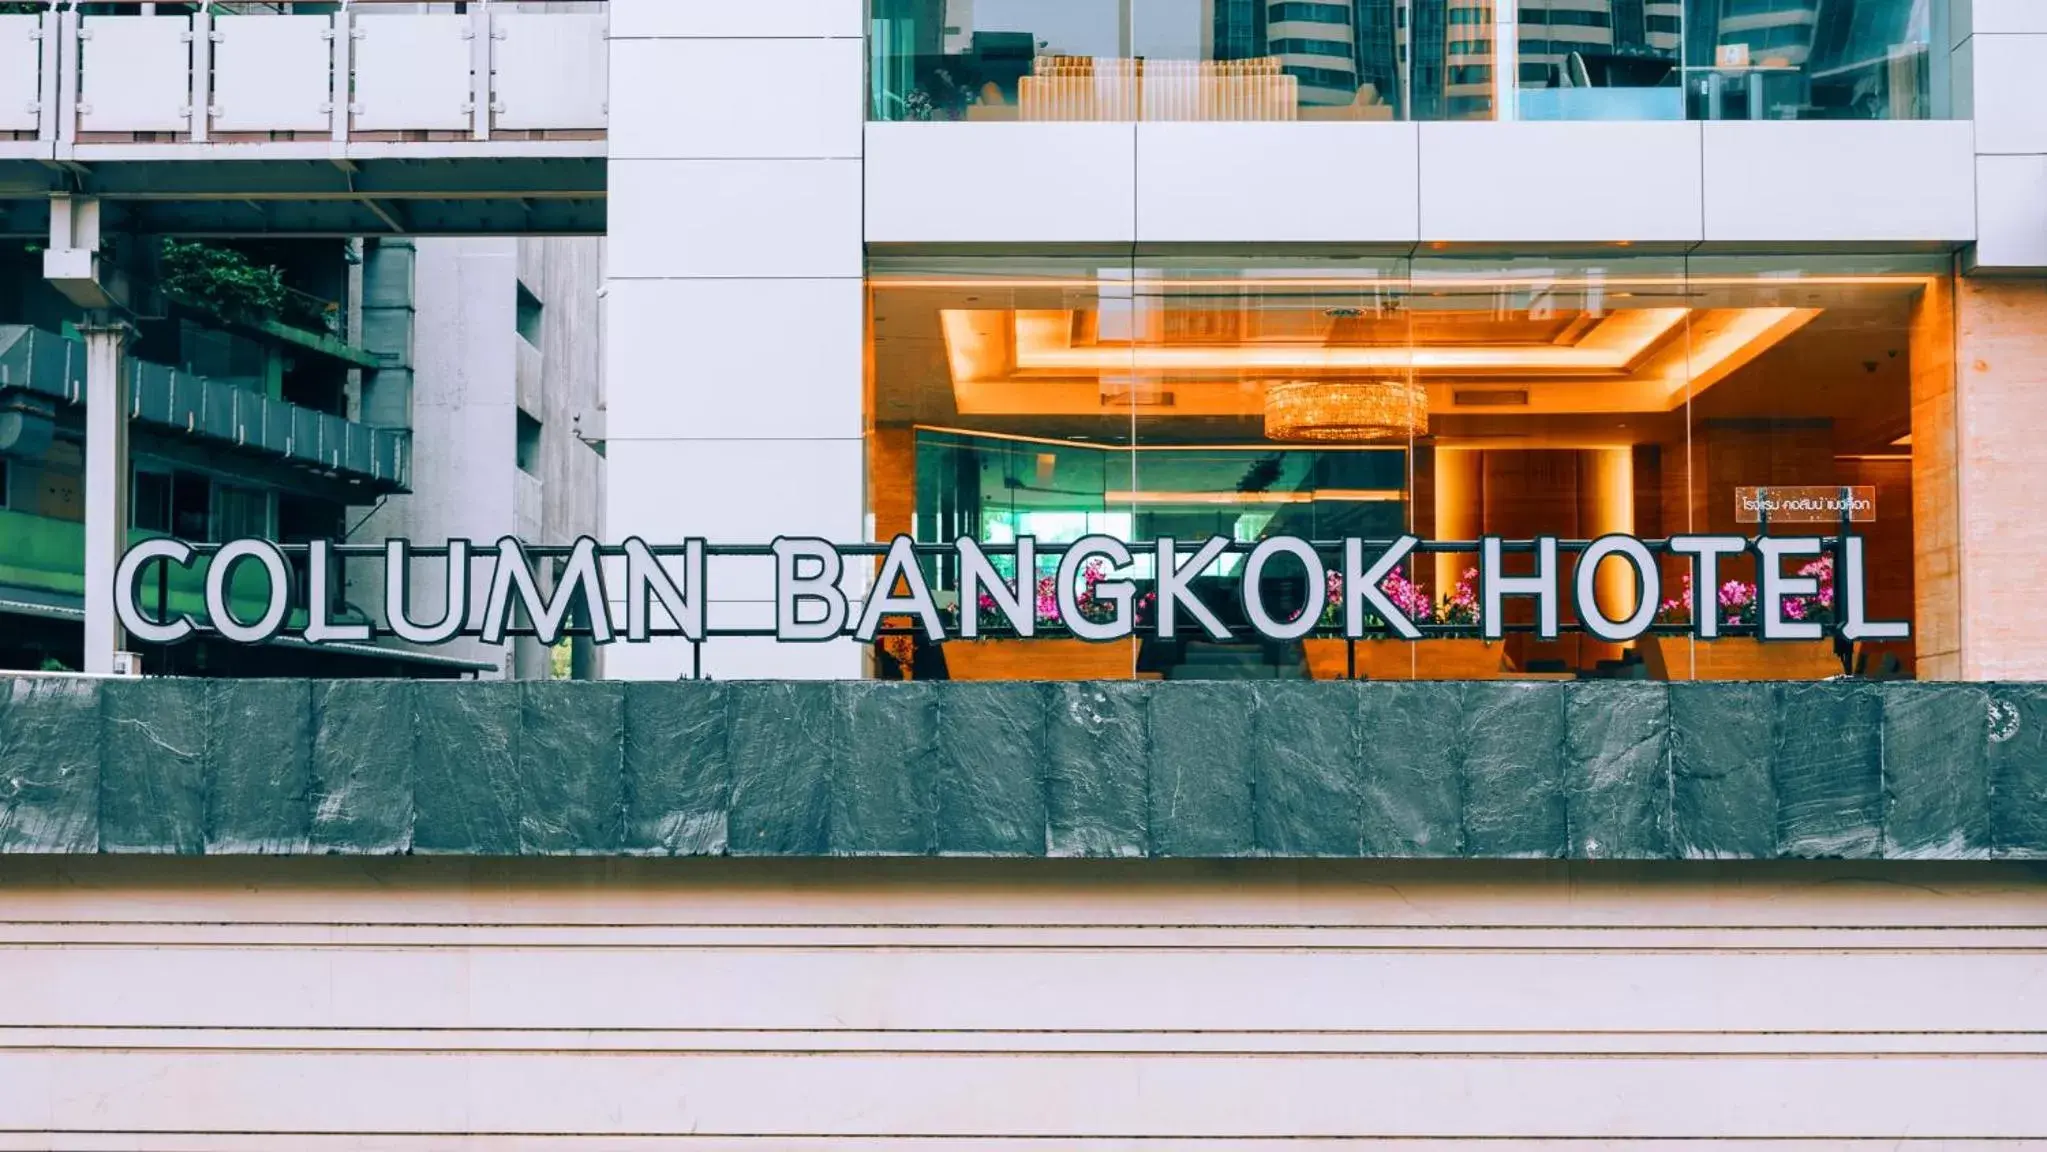 Facade/entrance, Property Logo/Sign in Column Bangkok Hotel